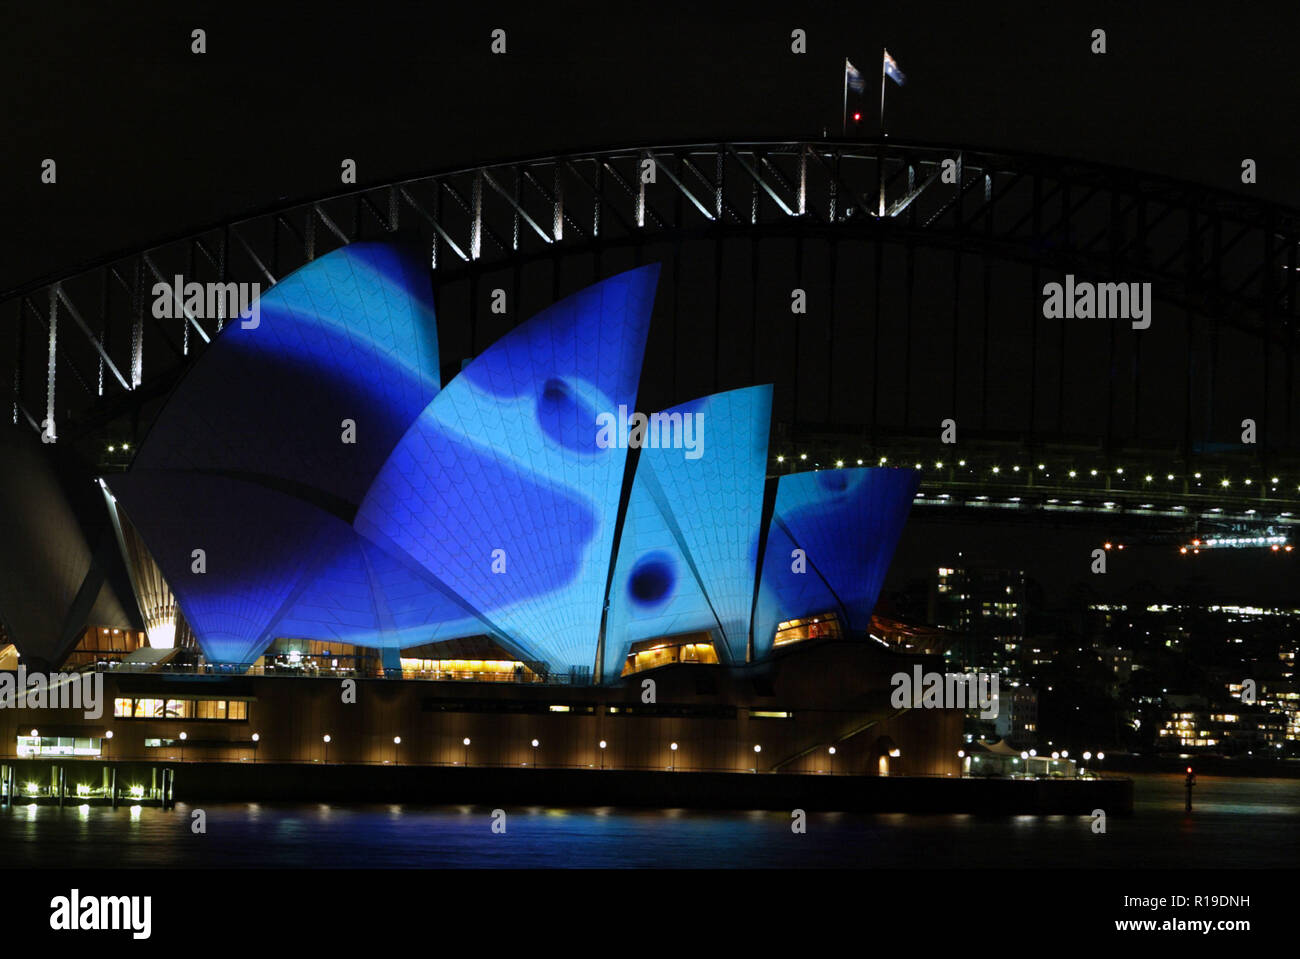 Effetti speciali di illuminazione visualizzati sul 'smira' di Sydney Opera  House durante il luminoso, il festival di musica, idee, luce e performance  curata da Brian Eno e che si terrà dal 26